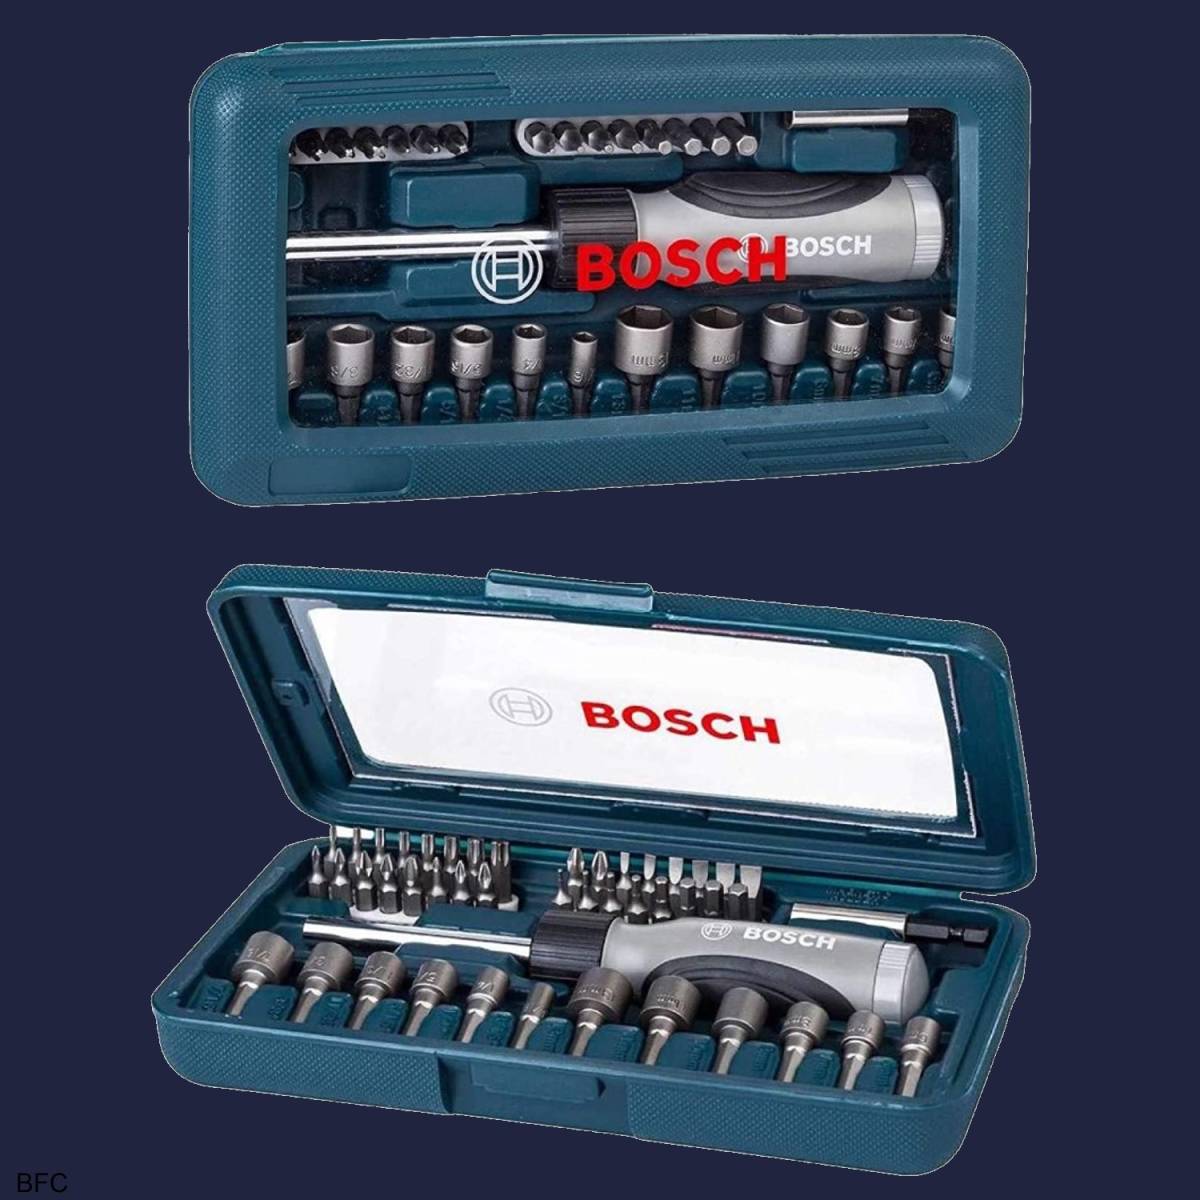 ビットラチェットセット 46点 BOSCH 6.35mm 1/4 ミニチュアビット ラチェット式ドライバー プラスチックケース ボッシュ 送料無料